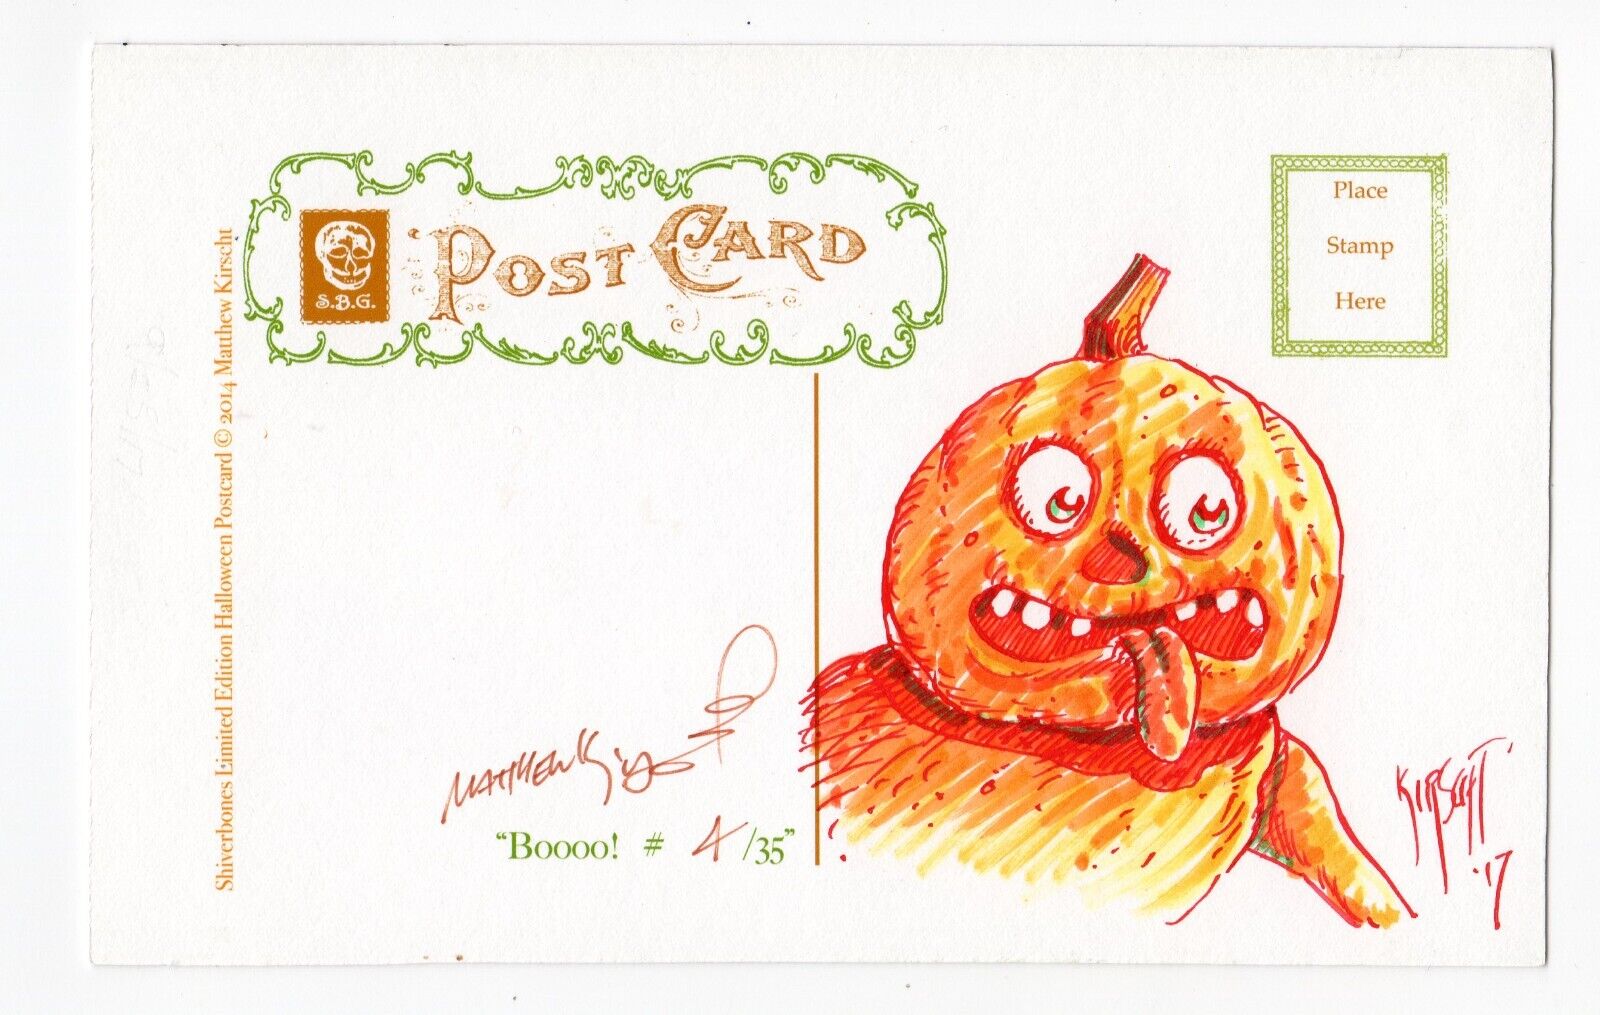 Halloween Postcard Matthew Kirscht 2014 BOOOO 4/35 Flat Sketch